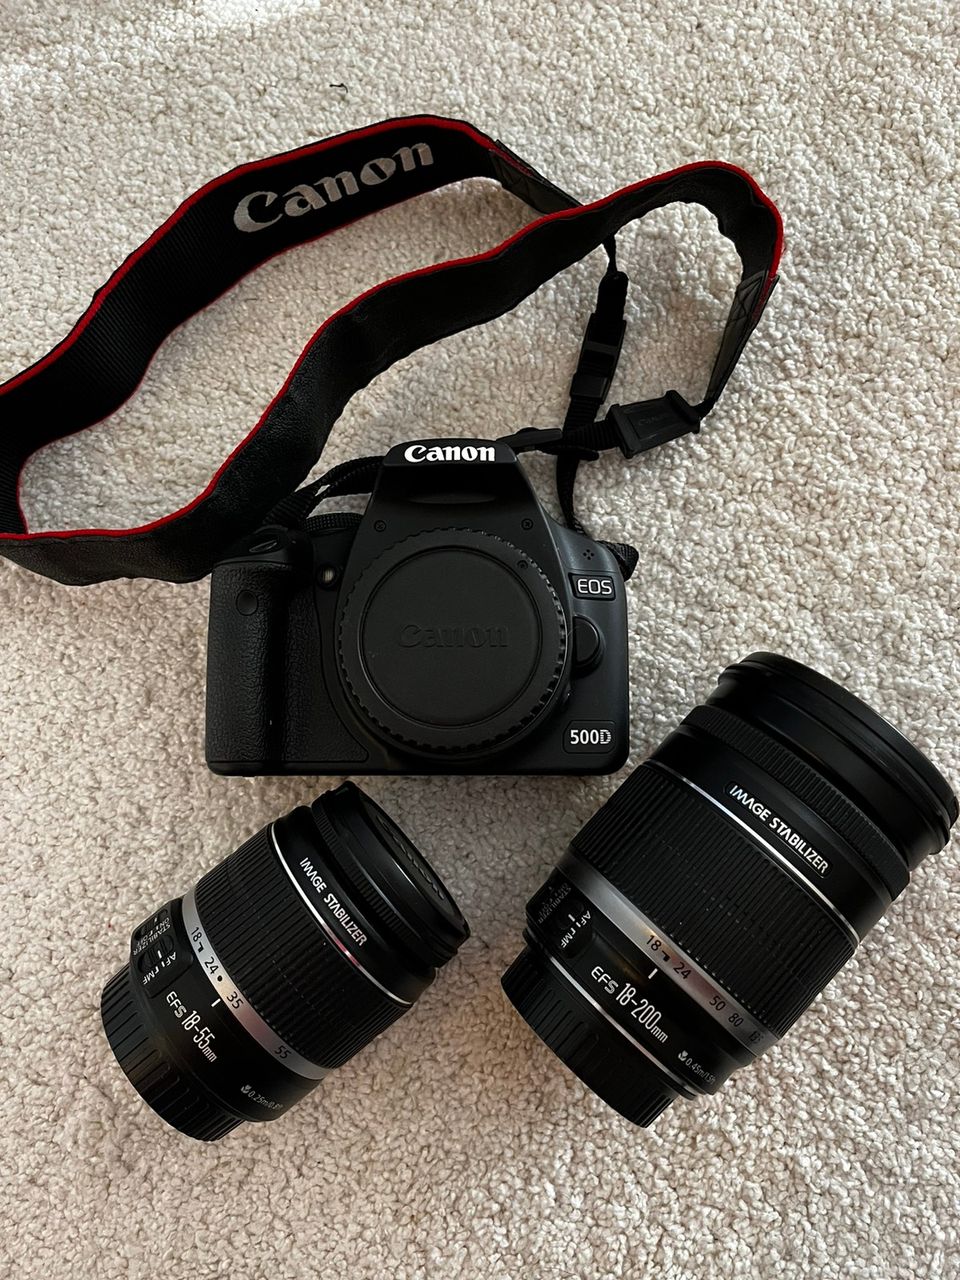 Canon EOS 500D järjestelmäkamera kahdella objekitiivilla